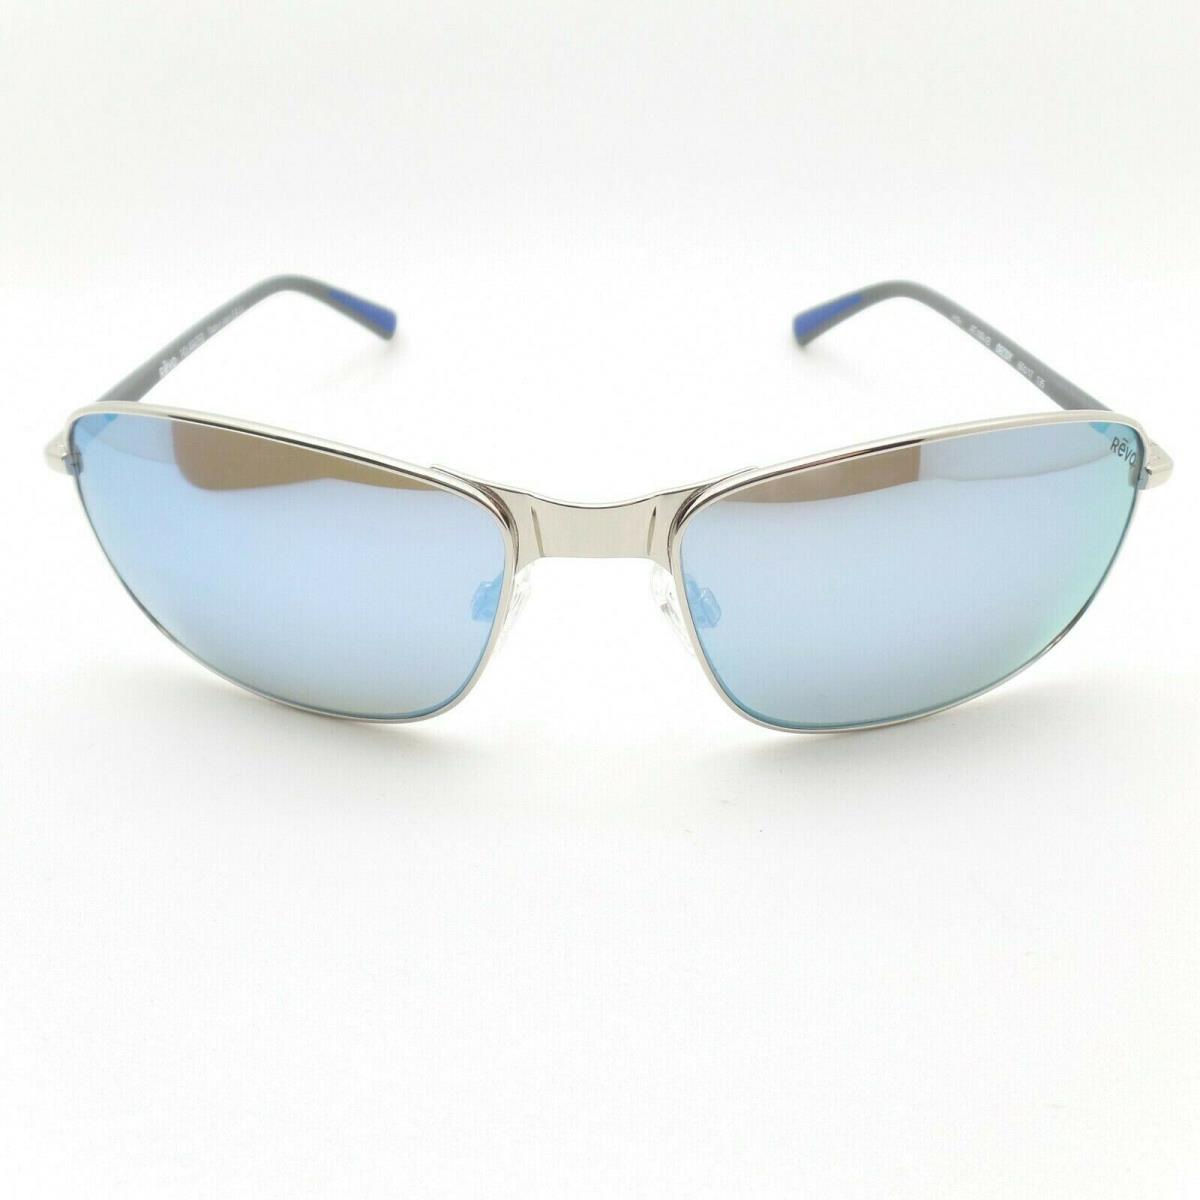 Revo sunglasses  - Chrome Grey , Chrome Grey Frame